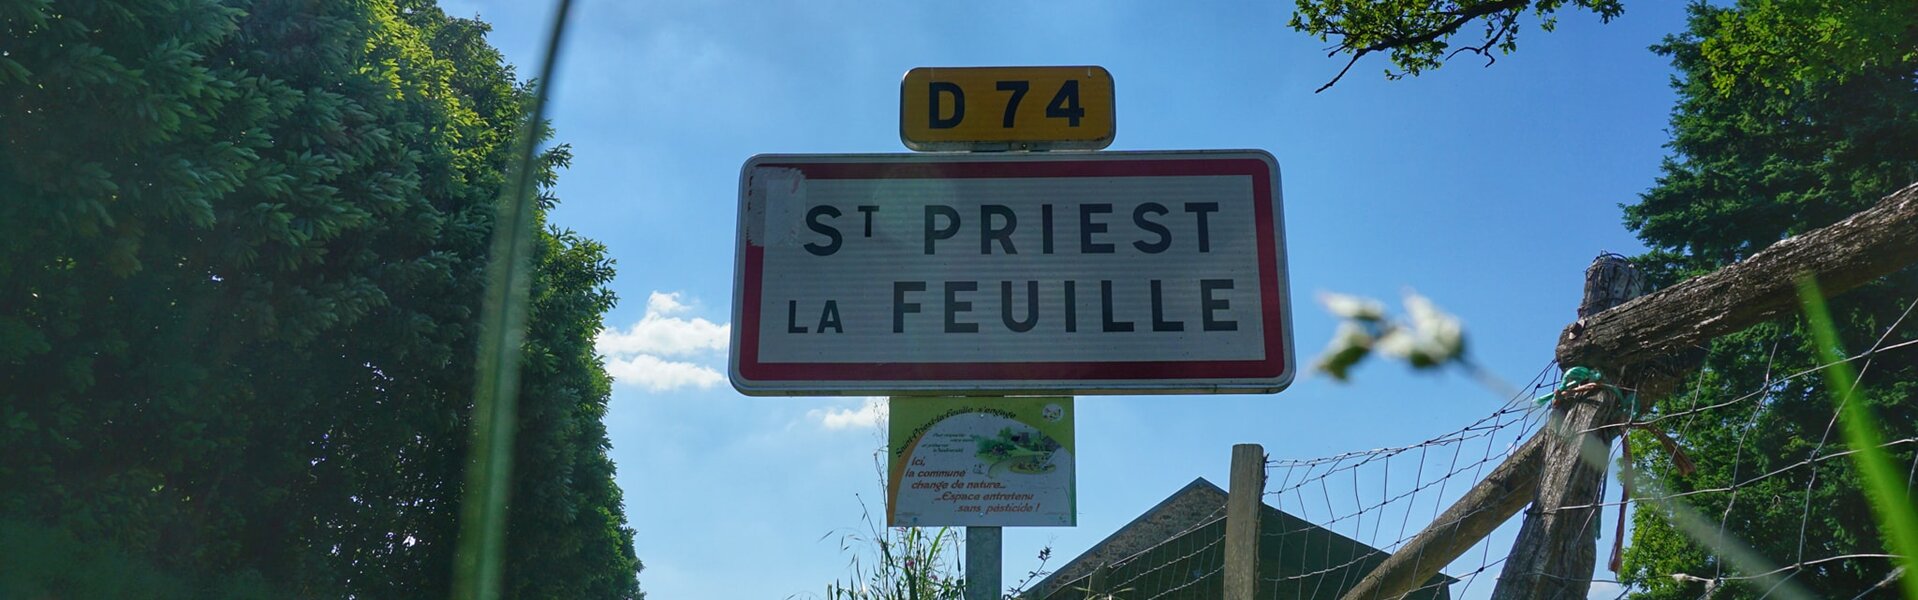 Contact/Accès à la Mairie de St Priest la Feuille